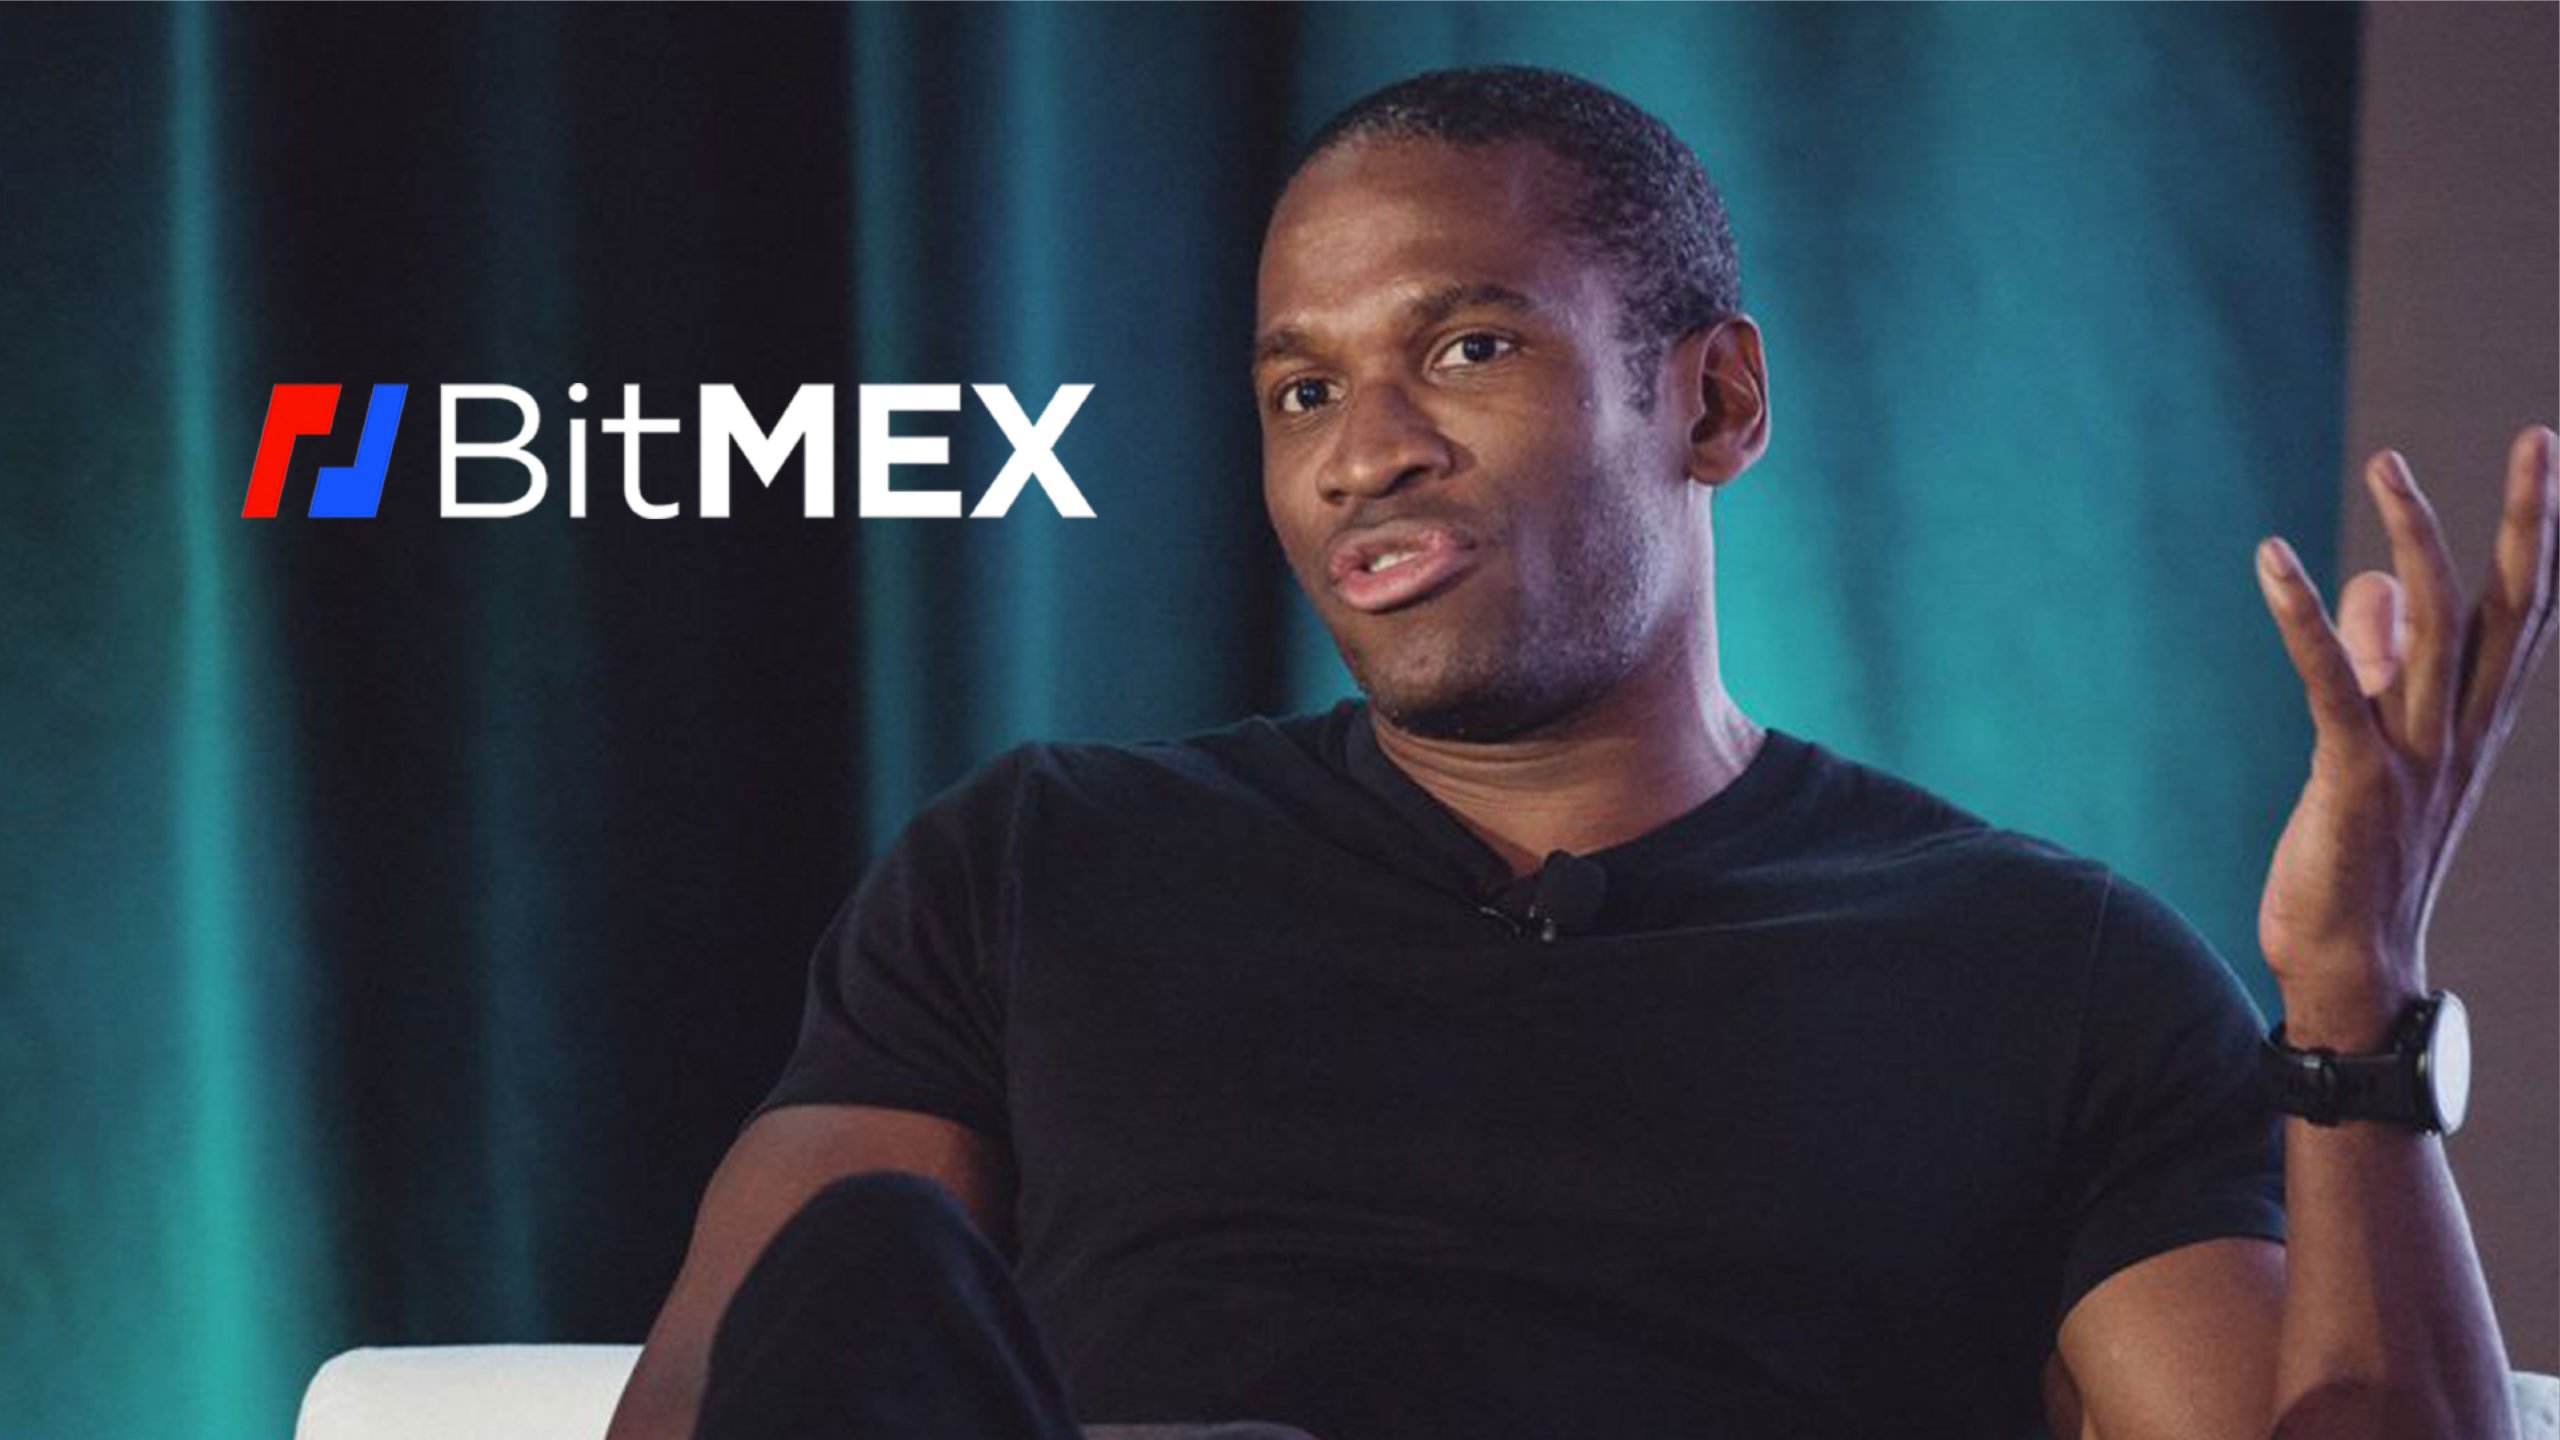 BitMEX CEO'su Arthur Hayes, önümüzdeki on yılda büyük bir finansal kriz olacağına dair yapılan tahminlerden bahsetti.